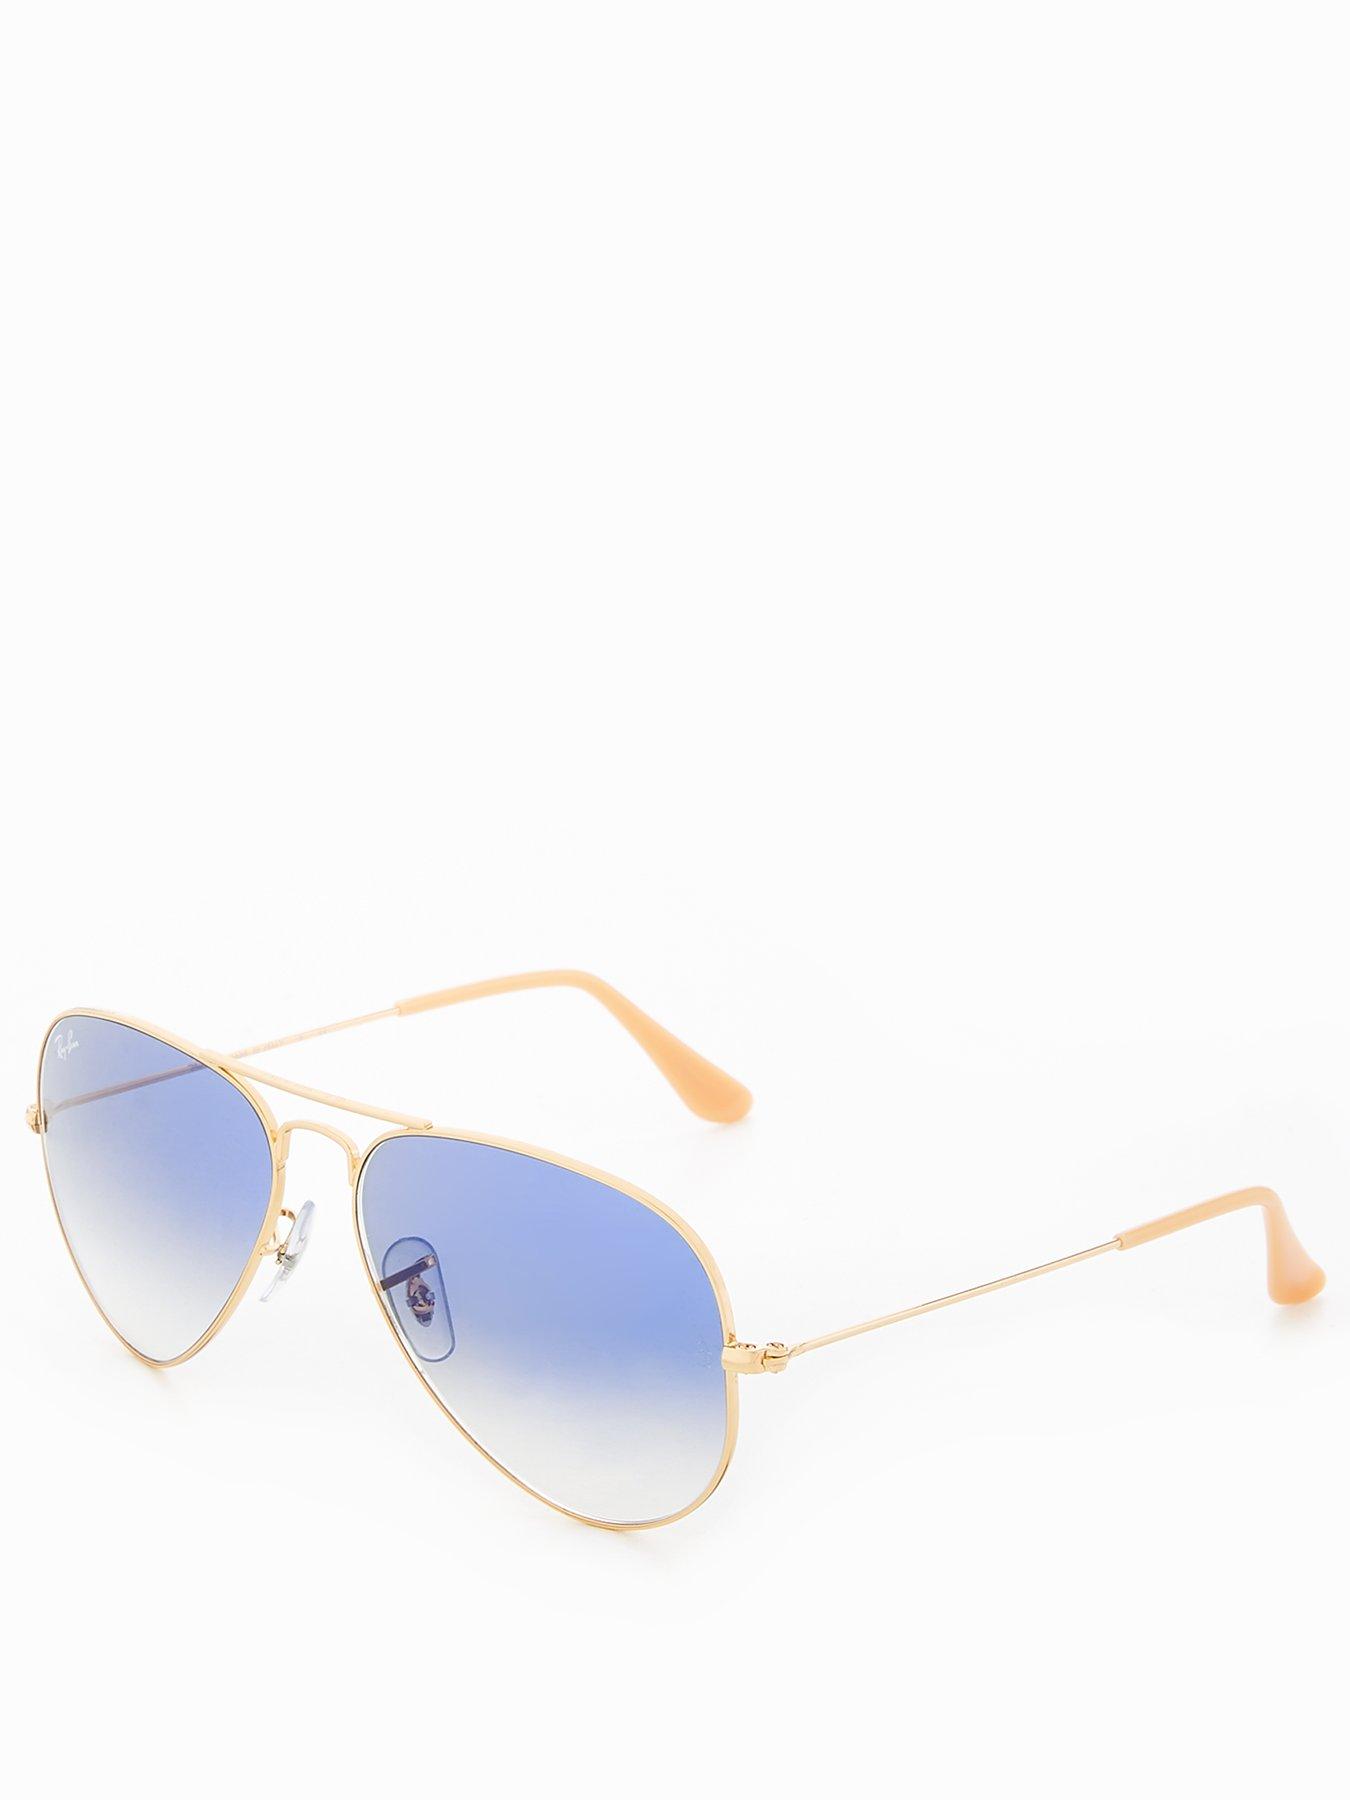 Women Aviator Sunglasses - Gold